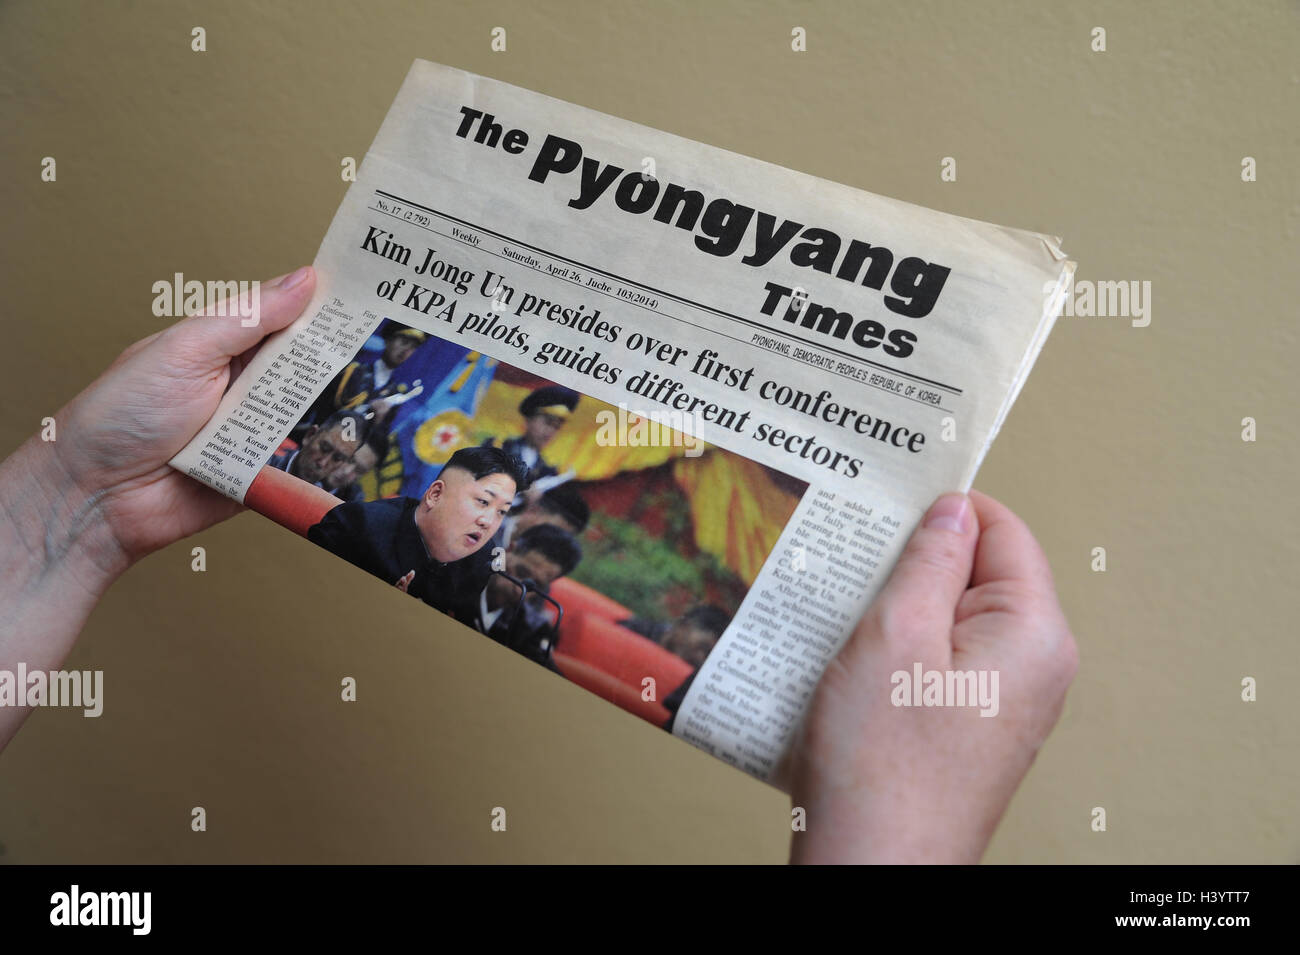 Le journal The Times de Pyongyang, en Corée du Nord Banque D'Images